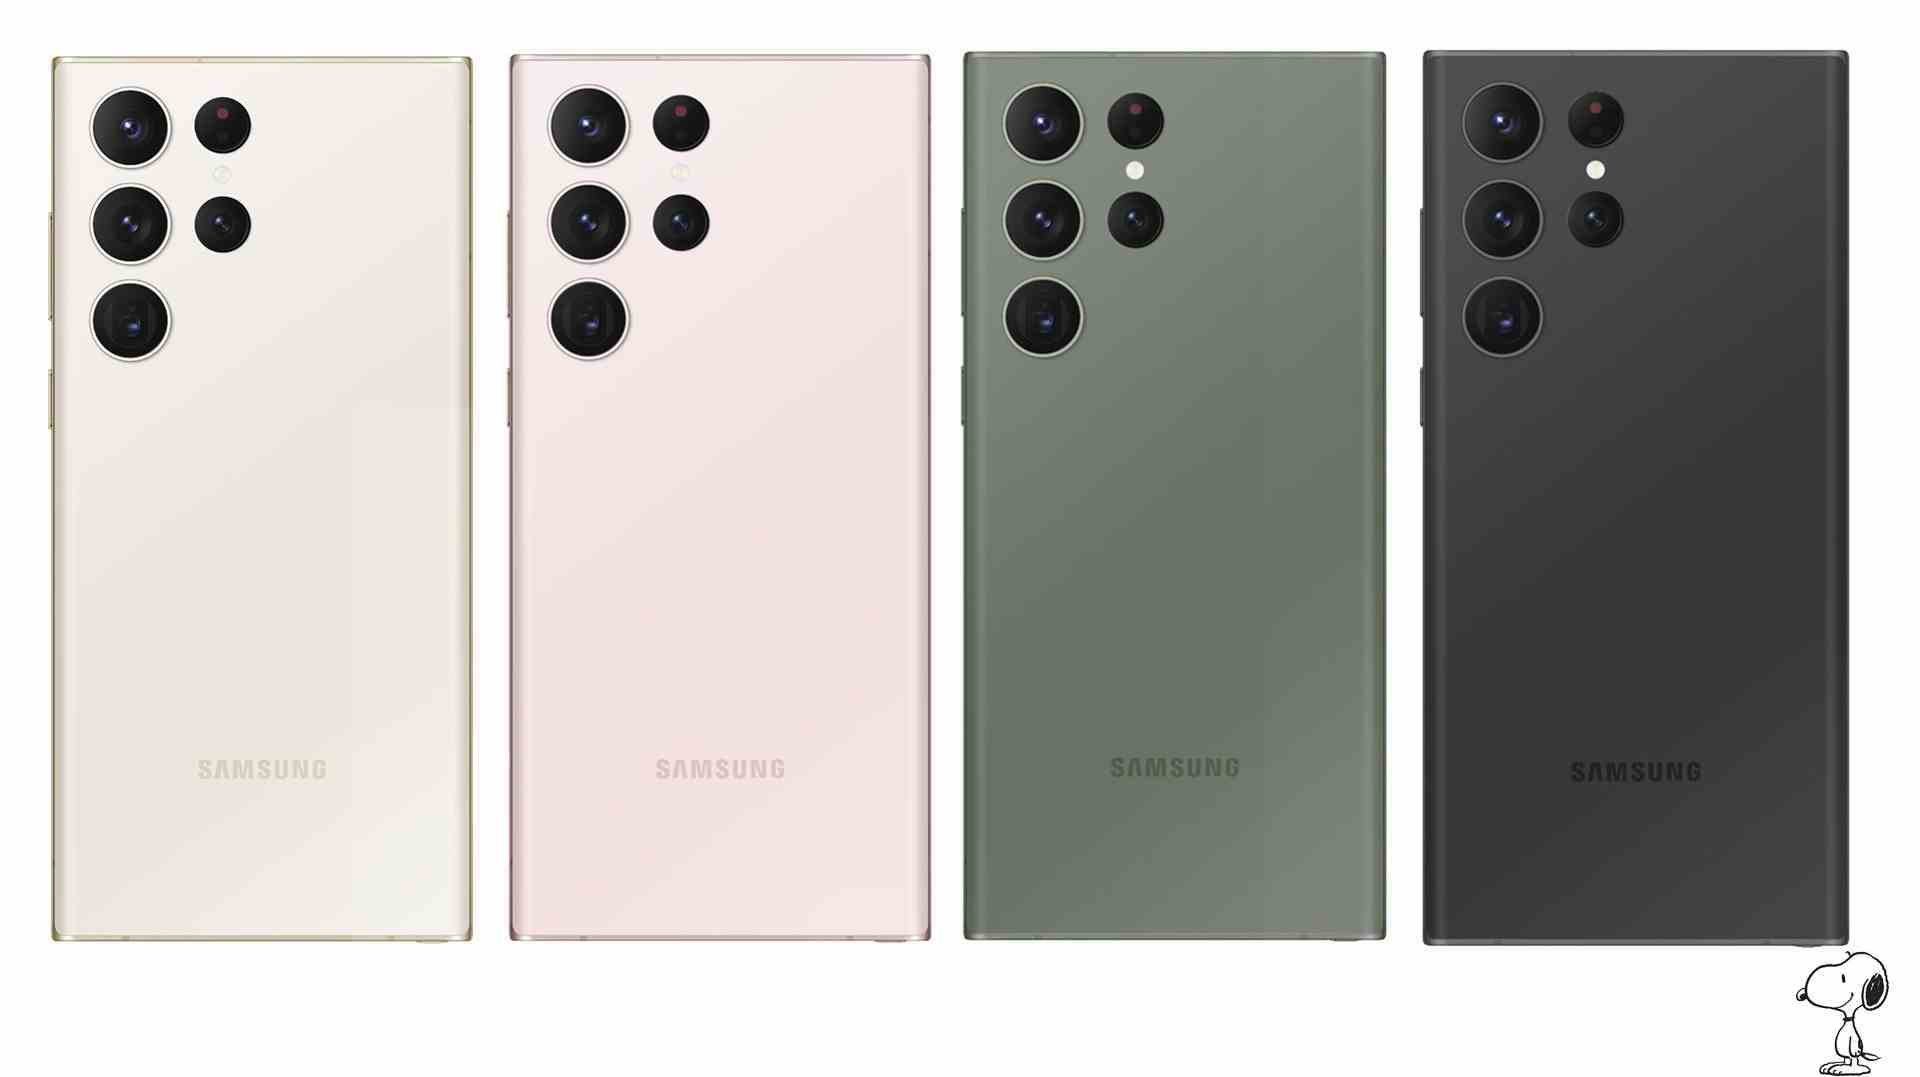 Samsung Galaxy S23 Ultra'nın dört farklı renkte sızdırılmış görüntüleri